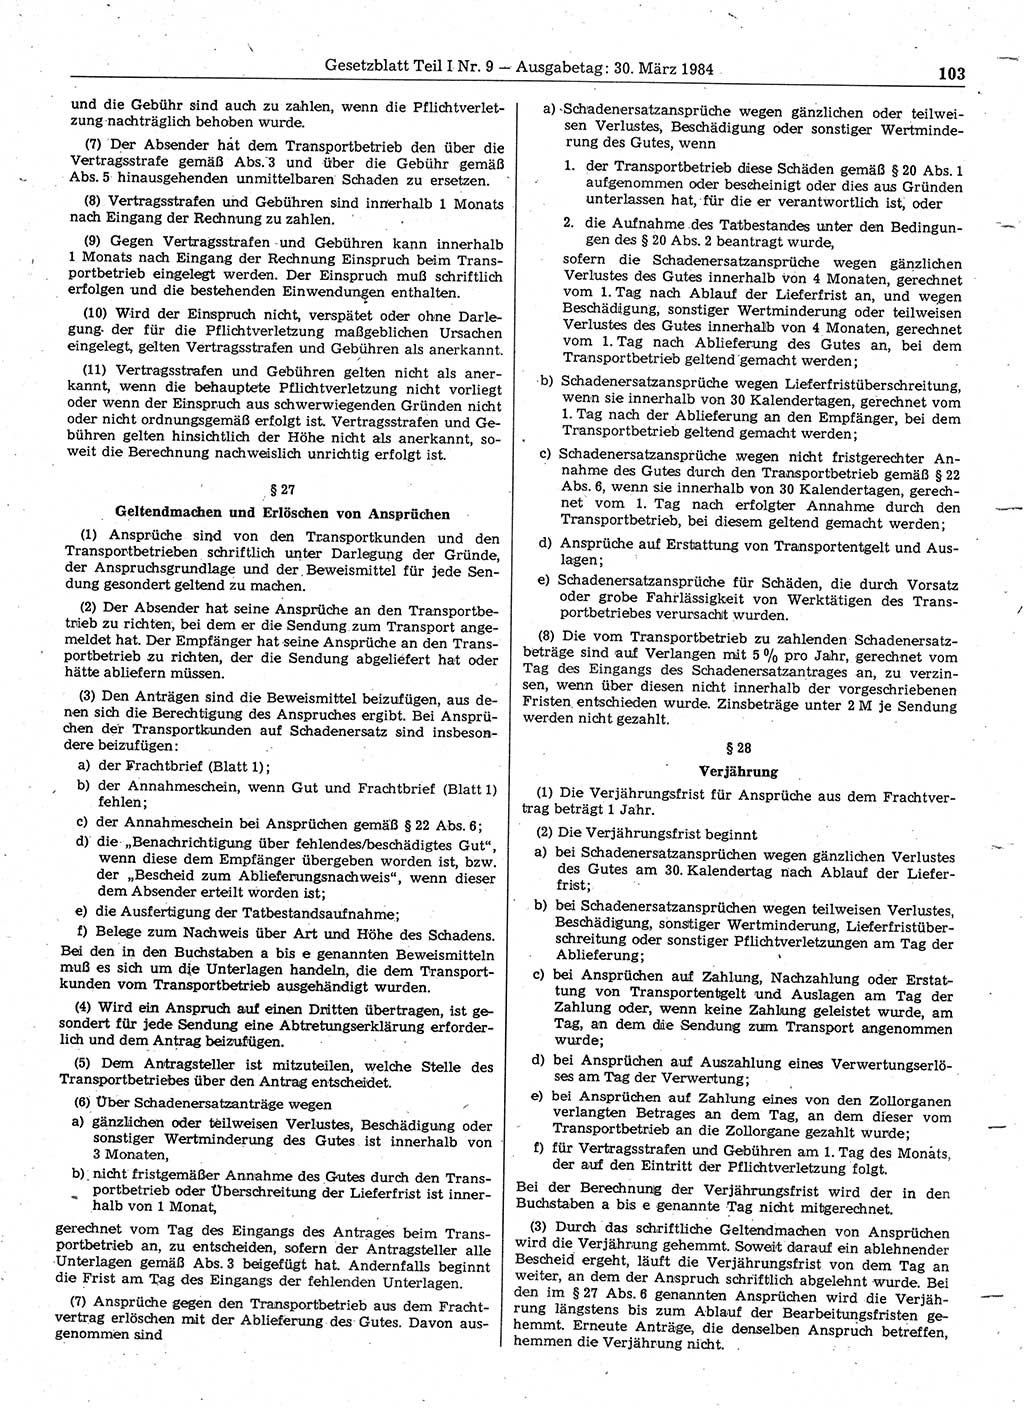 Gesetzblatt (GBl.) der Deutschen Demokratischen Republik (DDR) Teil Ⅰ 1984, Seite 103 (GBl. DDR Ⅰ 1984, S. 103)